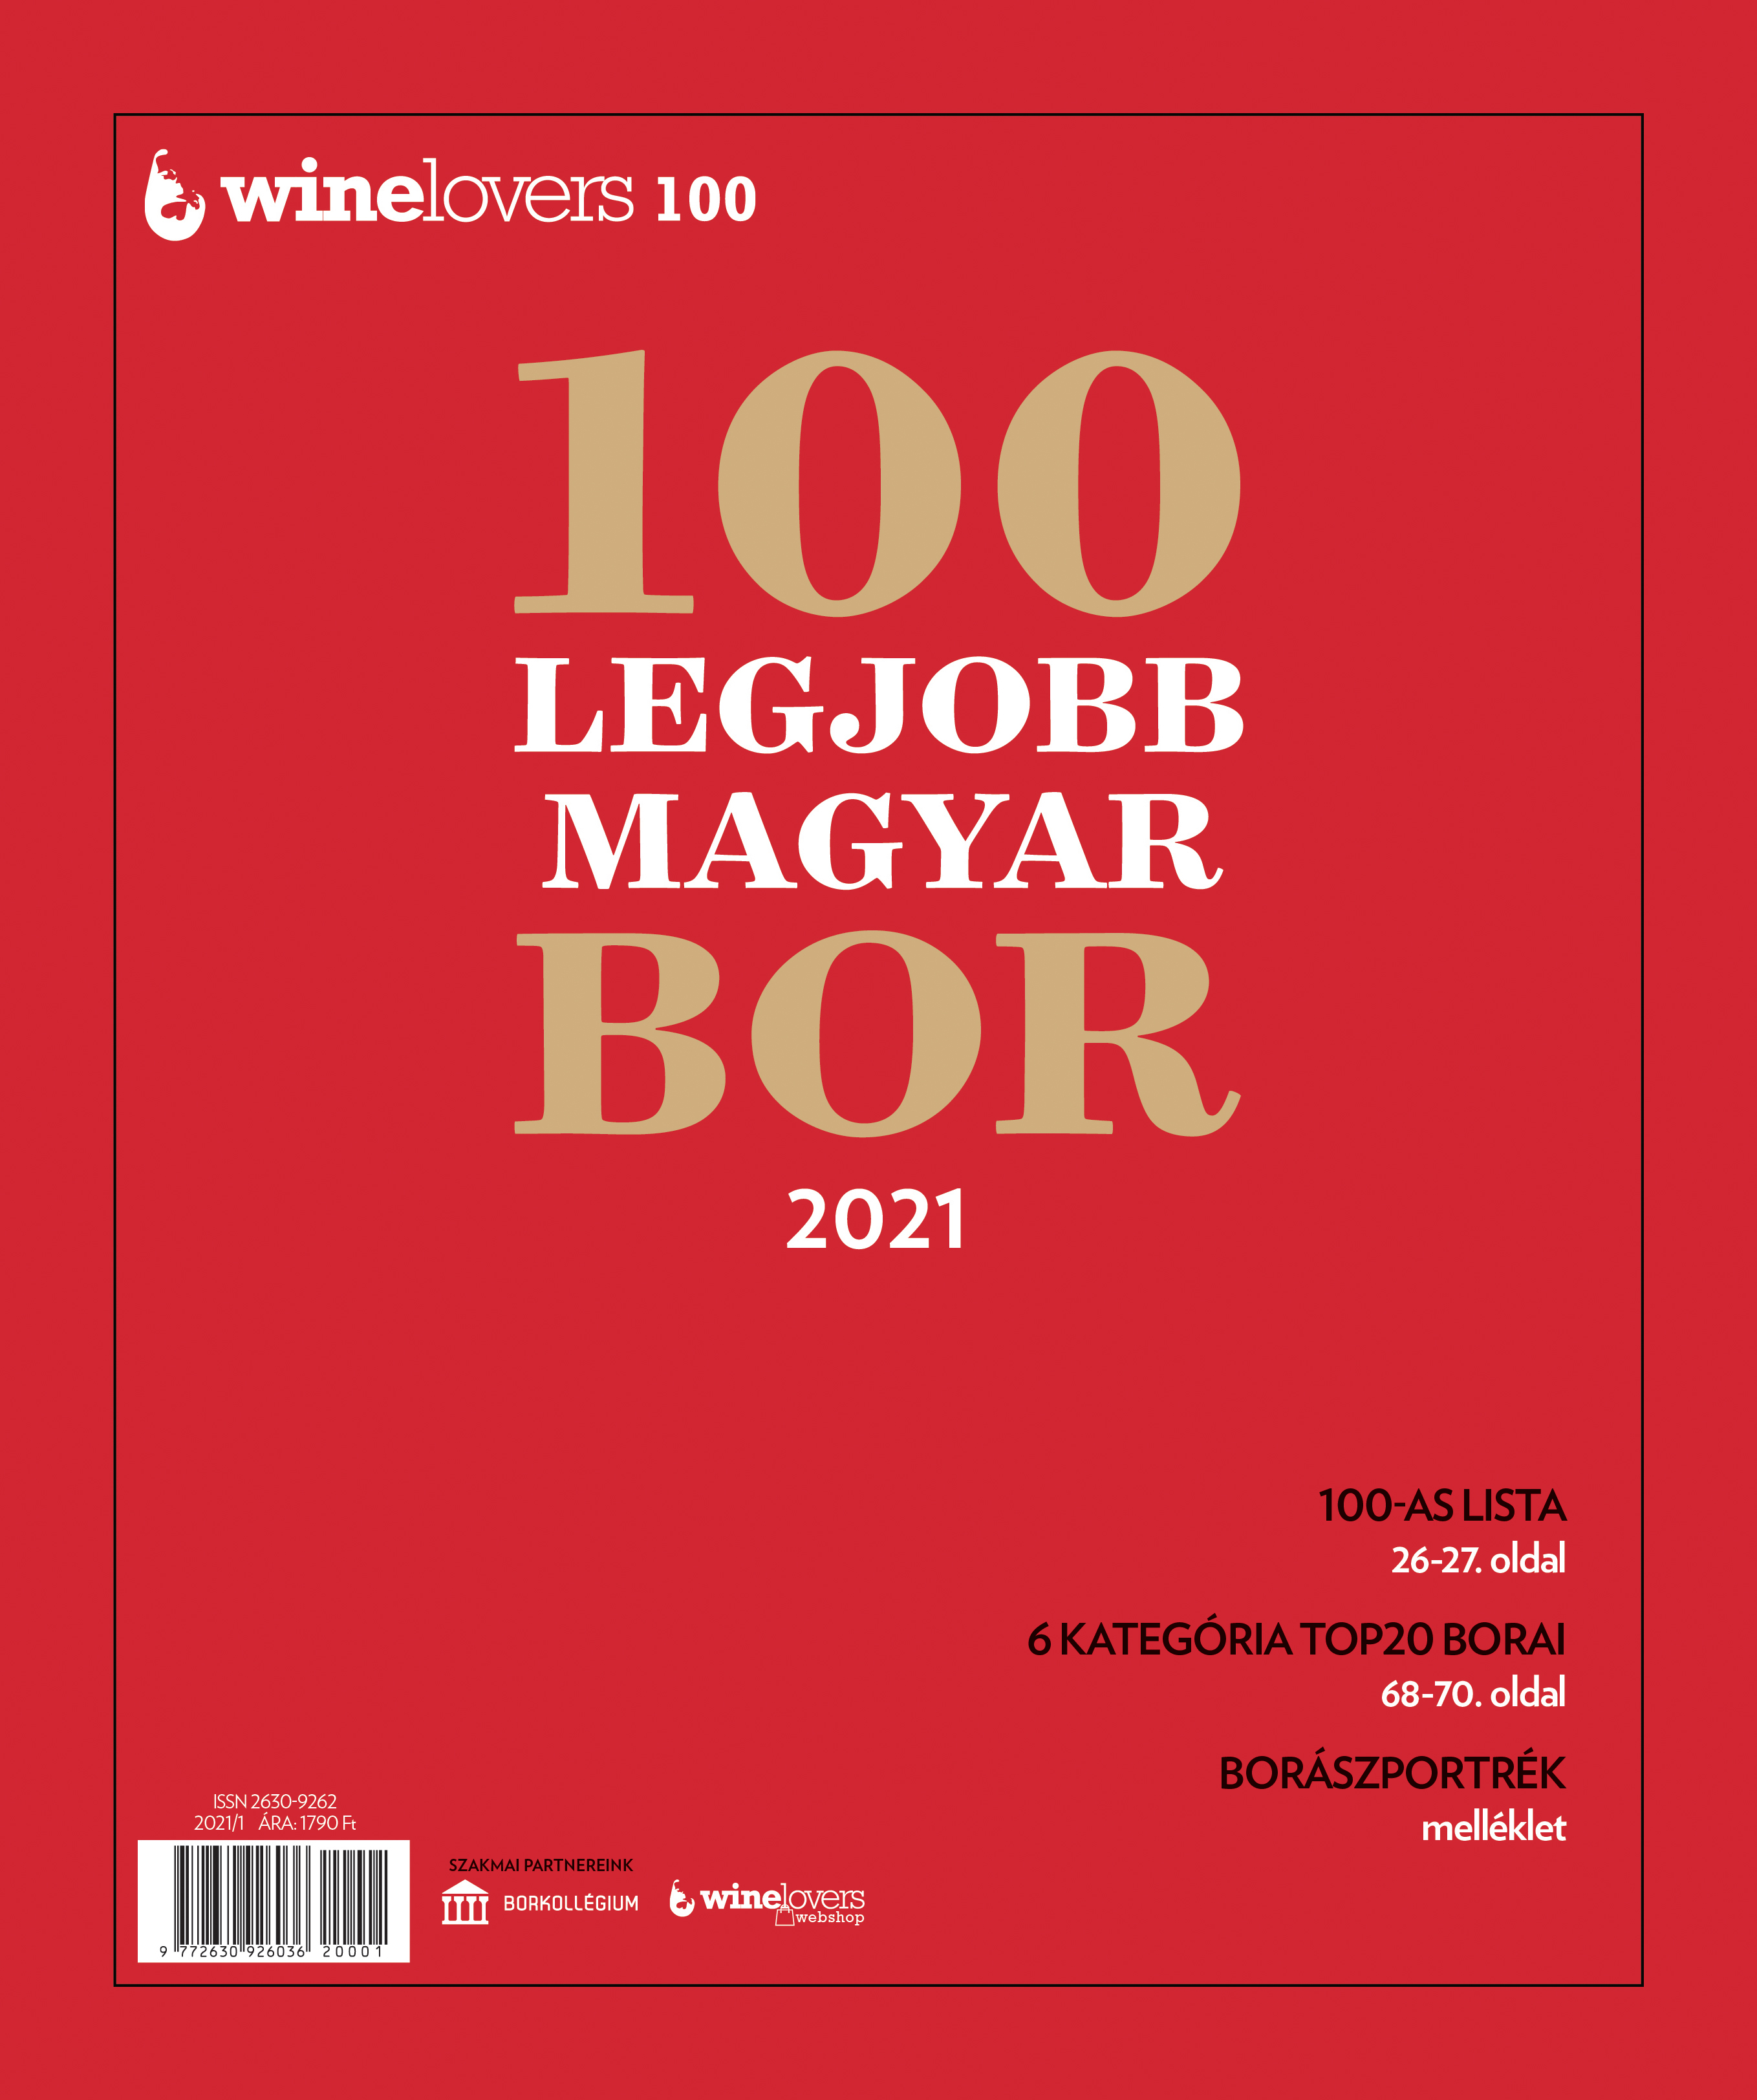 7 érv, hogy előjegyezz a Winelovers 100 magazinra 2021-ben is!